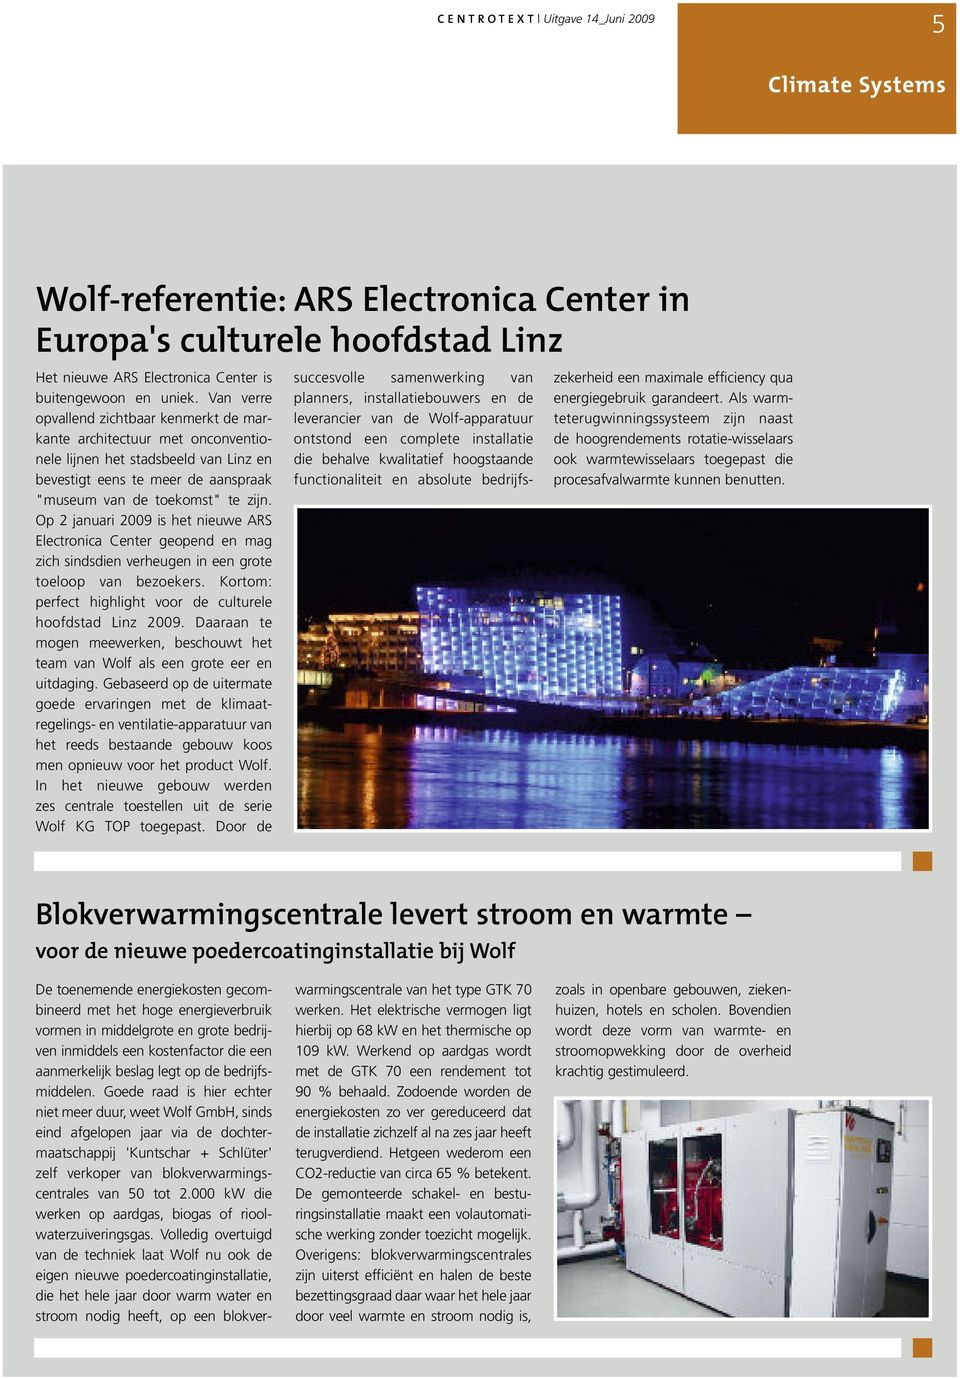 Op 2 januari 2009 is het nieuwe ARS Electronica Center geopend en mag zich sindsdien verheugen in een grote toeloop van bezoekers. Kortom: perfect highlight voor de culturele hoofdstad Linz 2009.